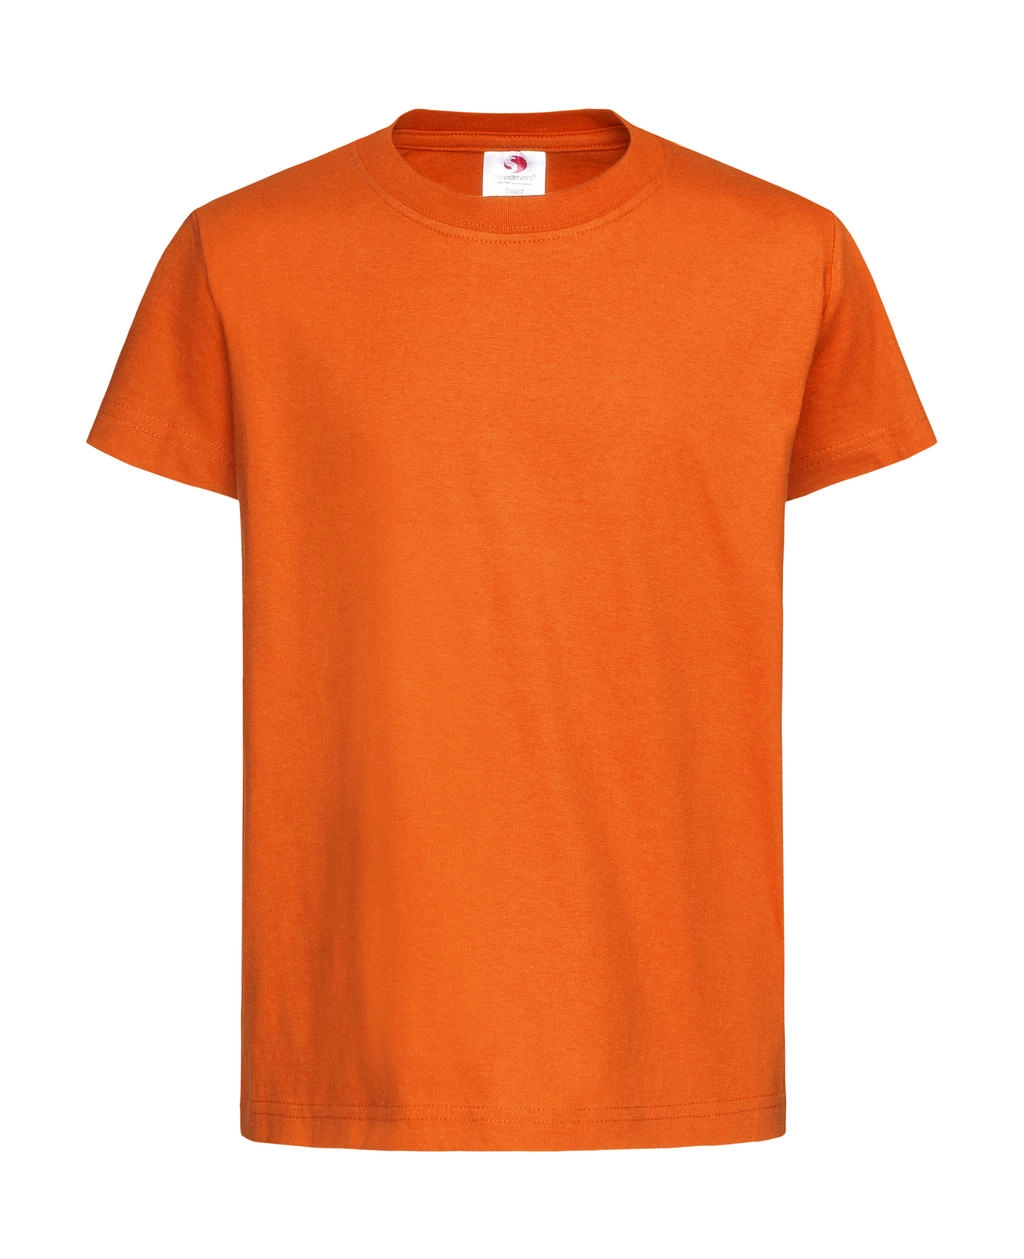 Classic-T Kids zum Besticken und Bedrucken in der Farbe Orange mit Ihren Logo, Schriftzug oder Motiv.